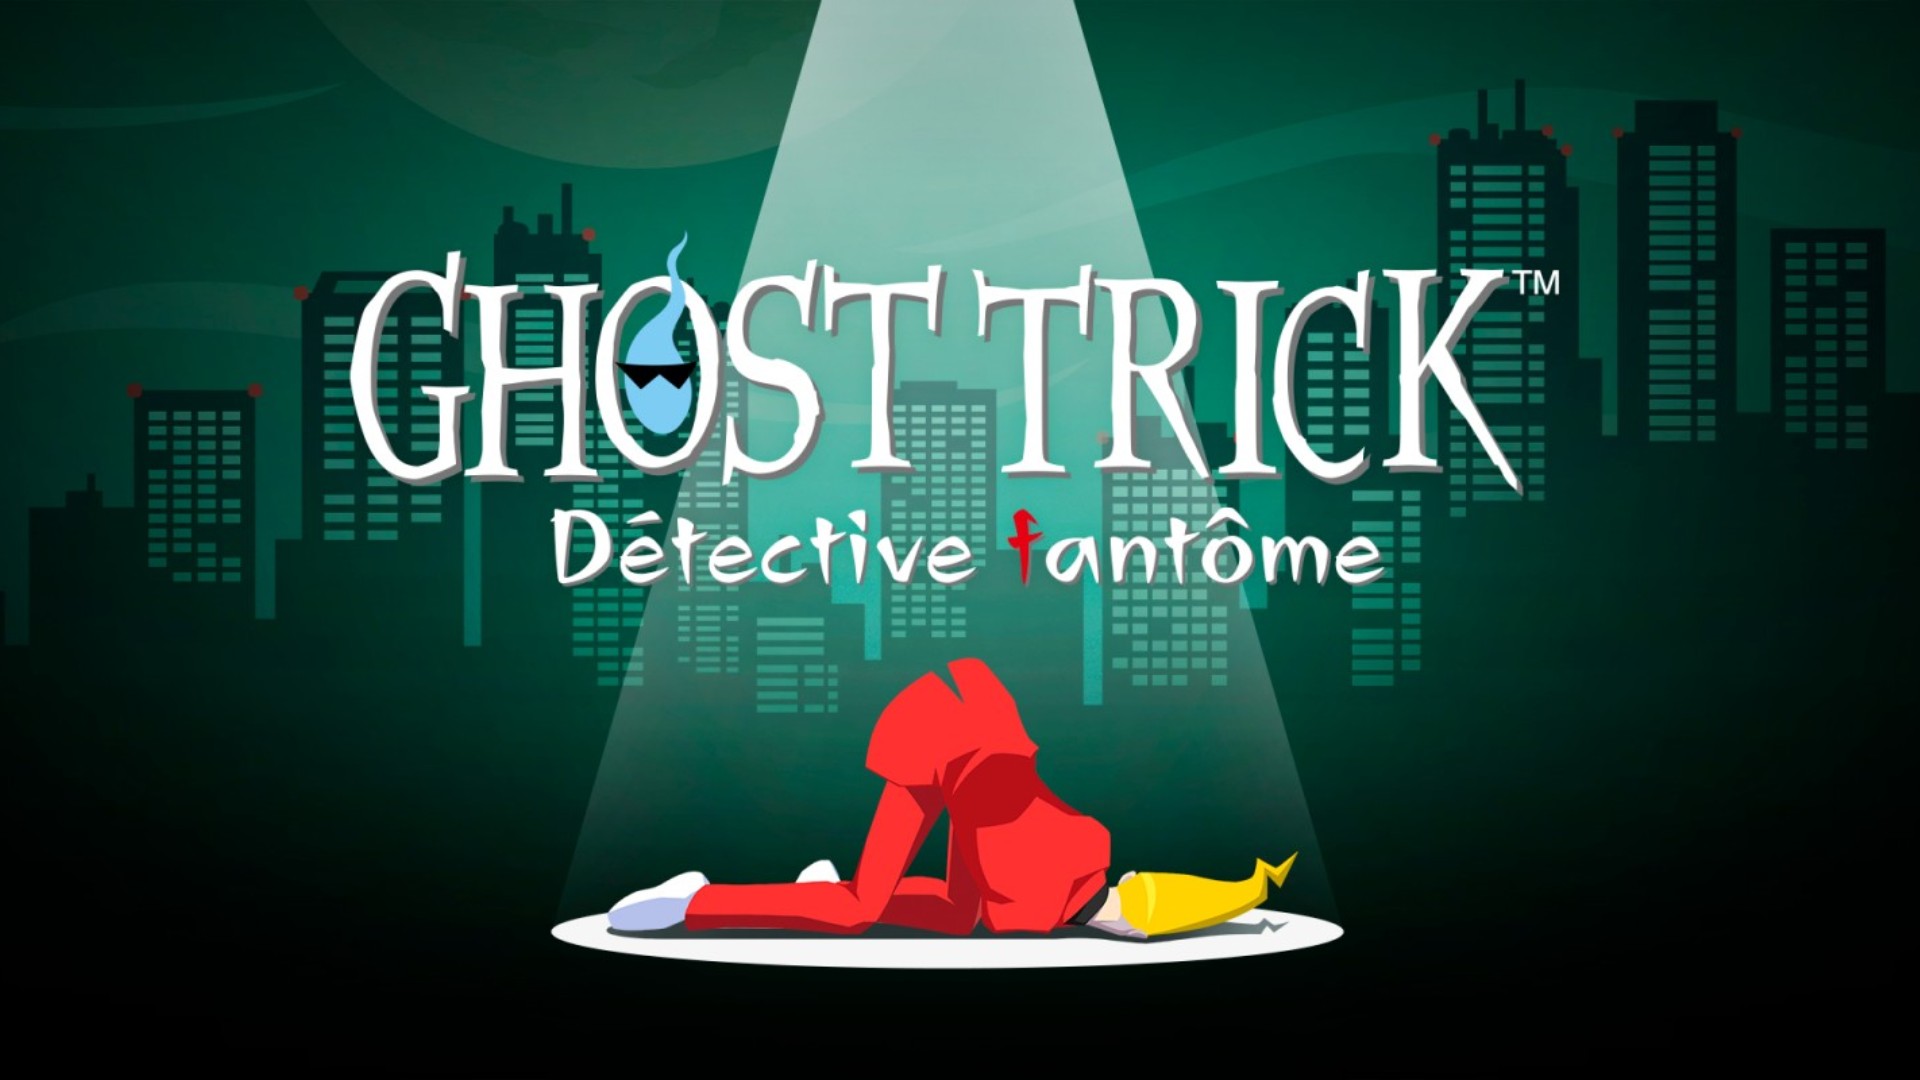 Demo Ghost Trick Détective Fantôme : où et quand sera-t-elle disponible ?